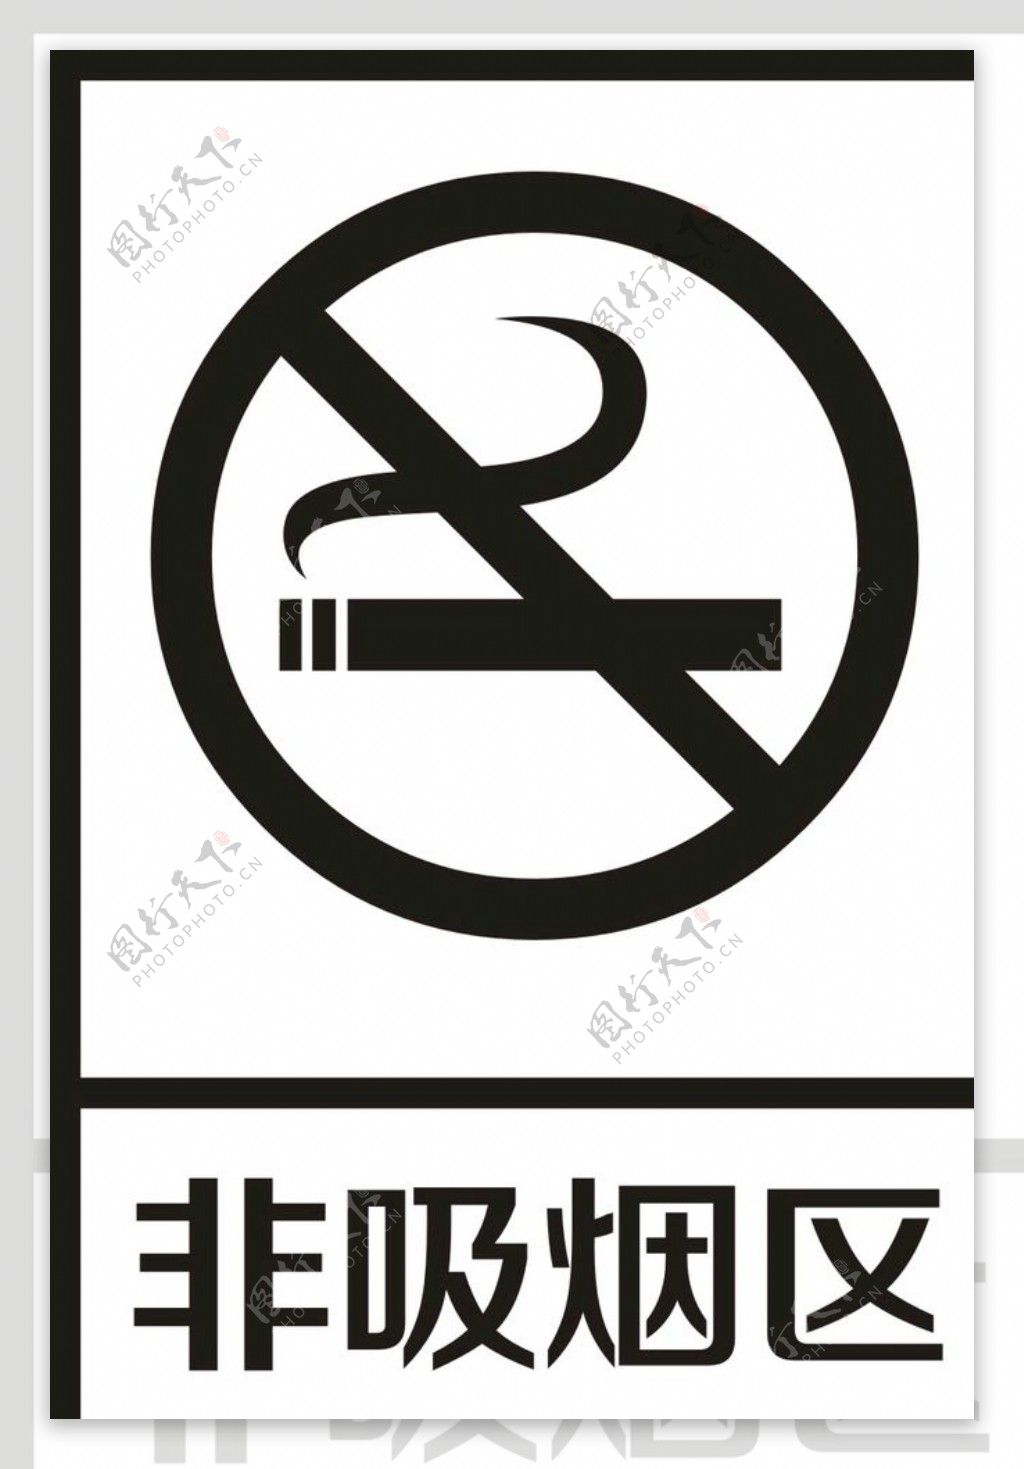 非吸烟区